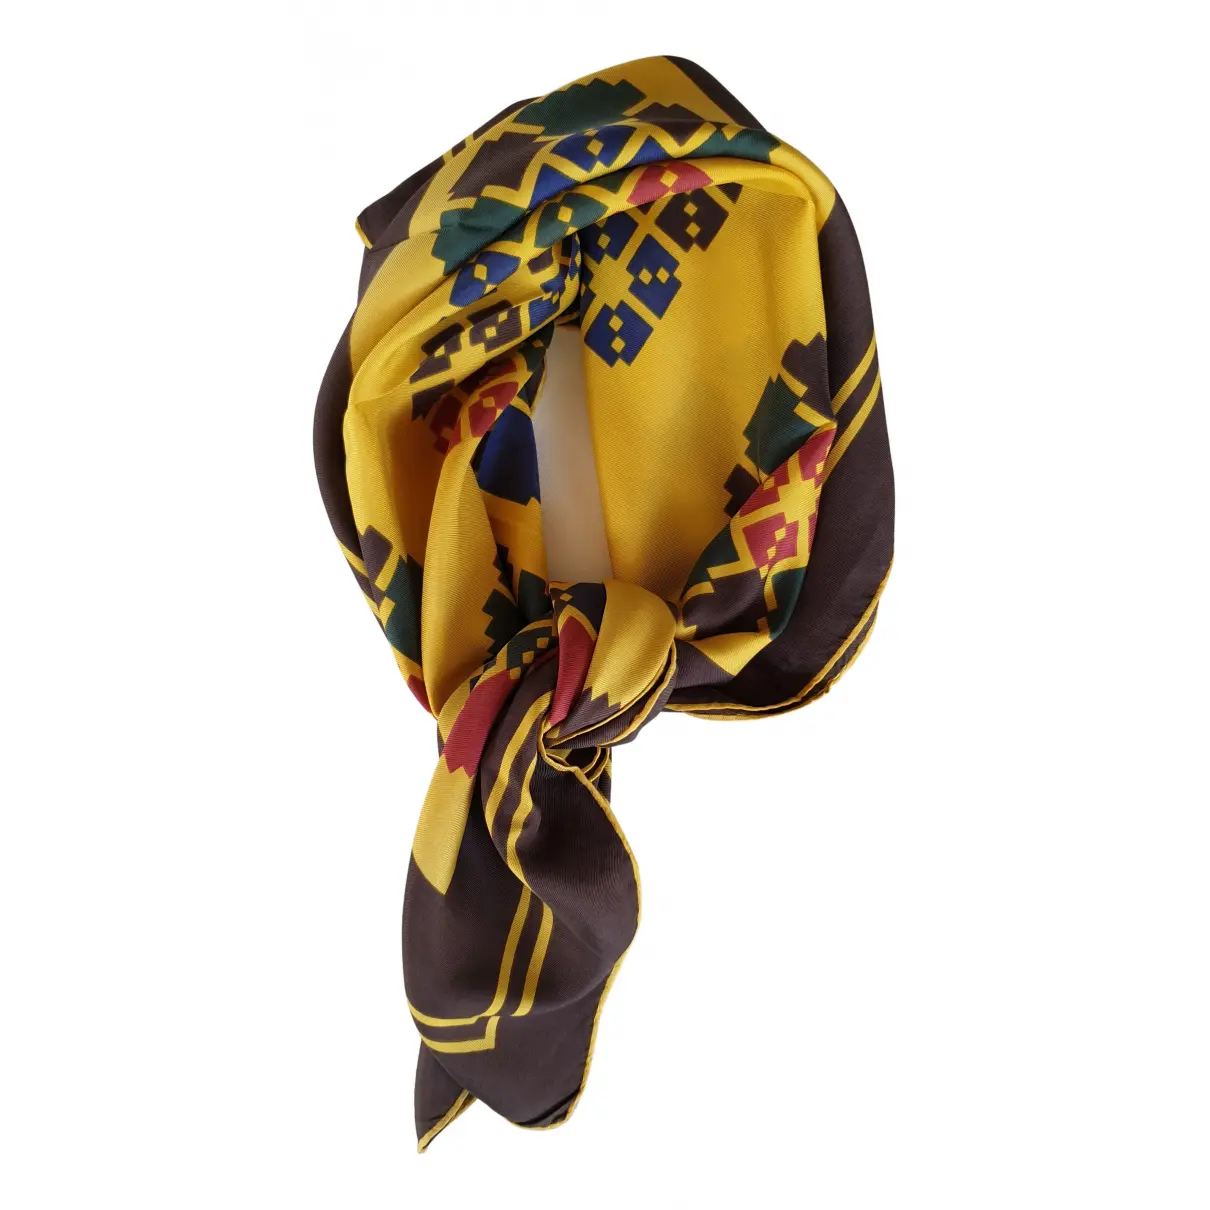 Buy Lanvin Silk handkerchief online - Vintage